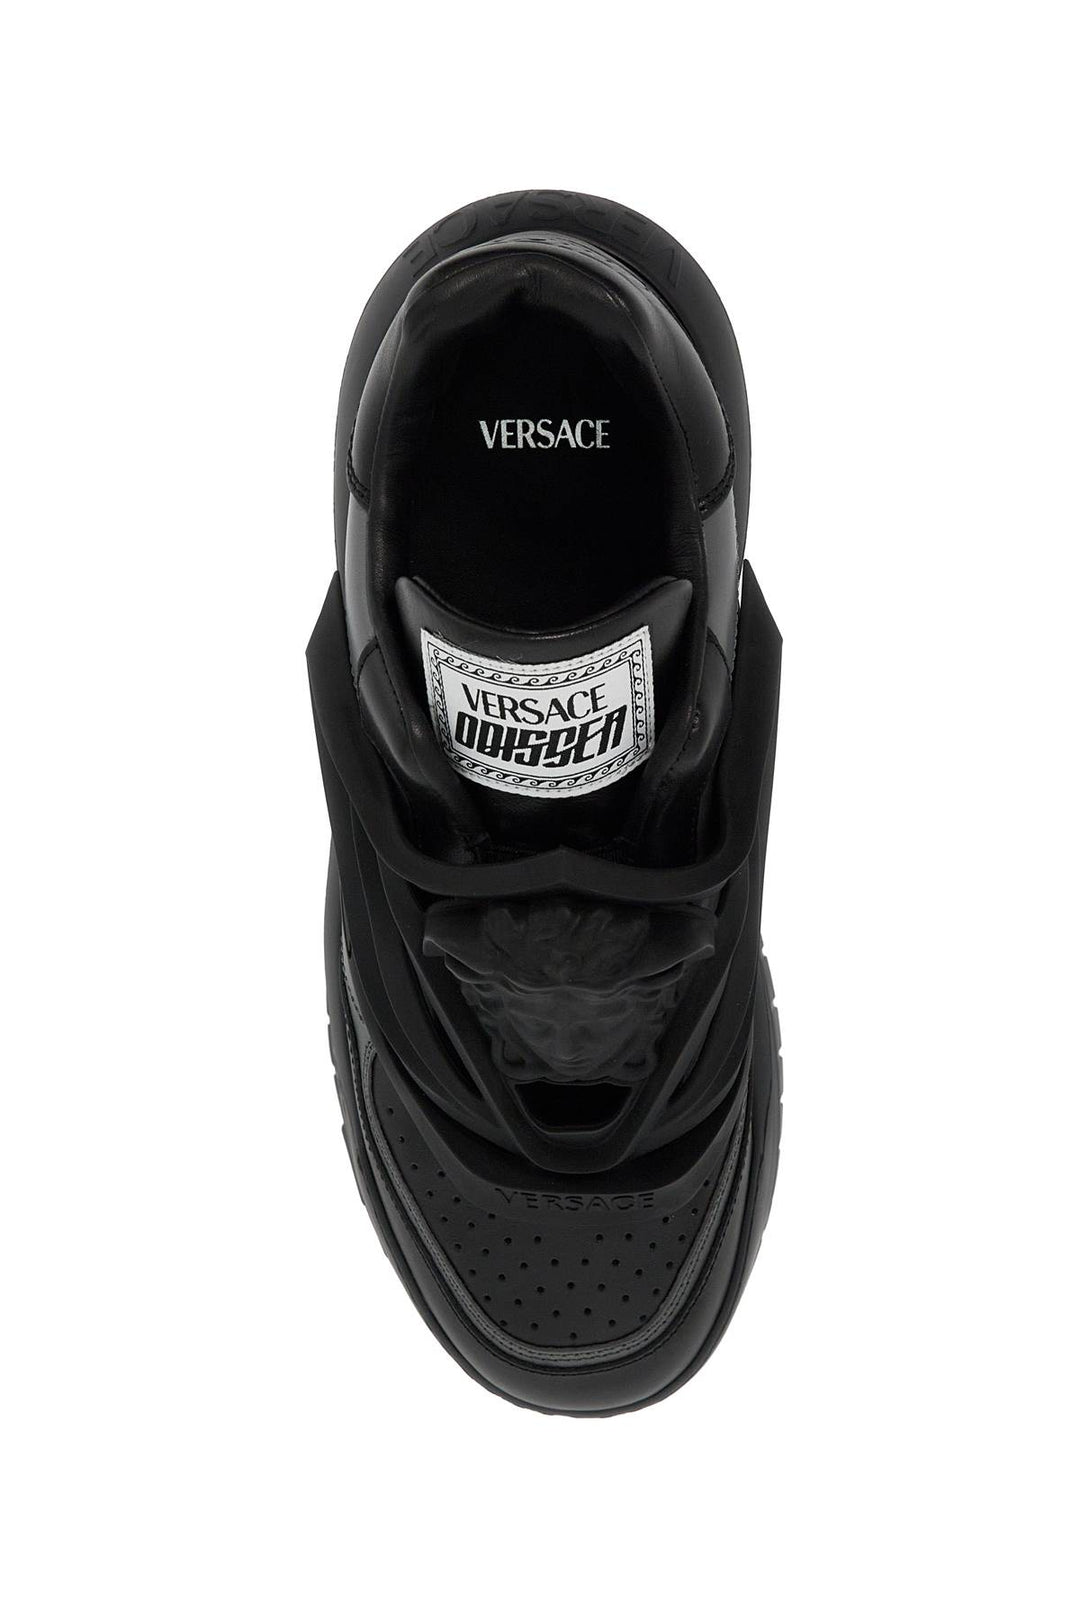 Versace Odissea Sneakers   Grey